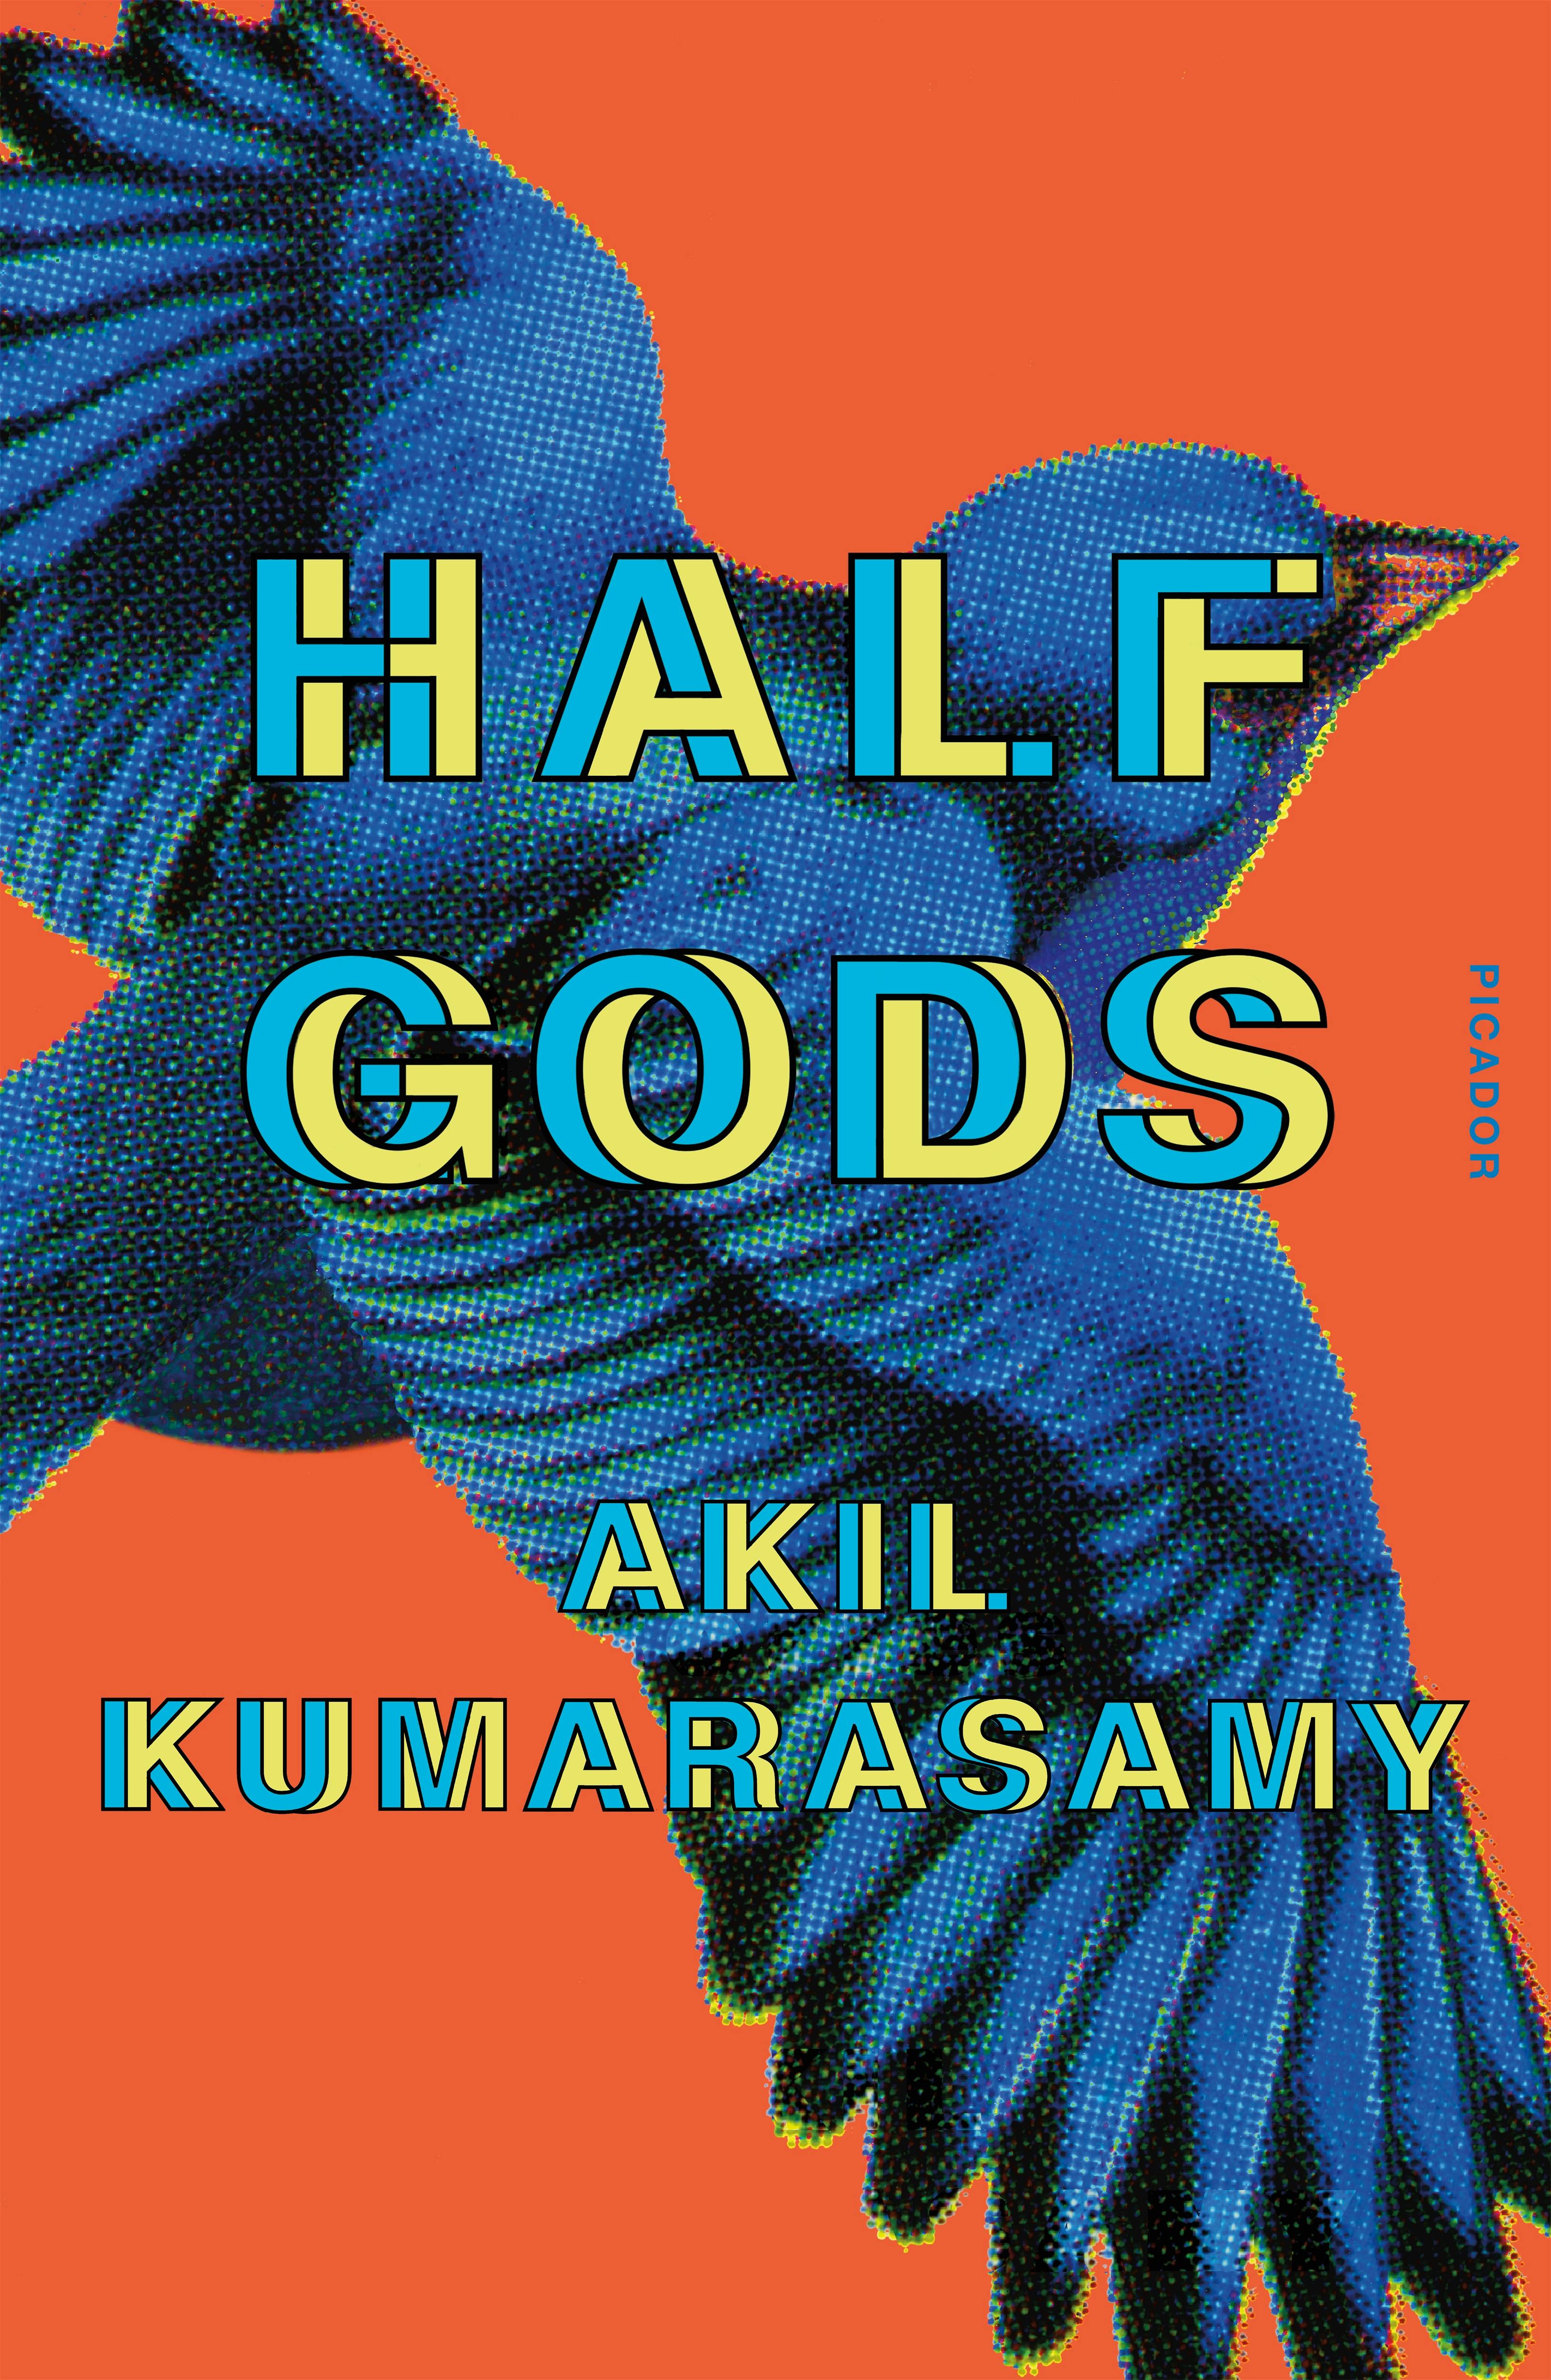 Half Gods